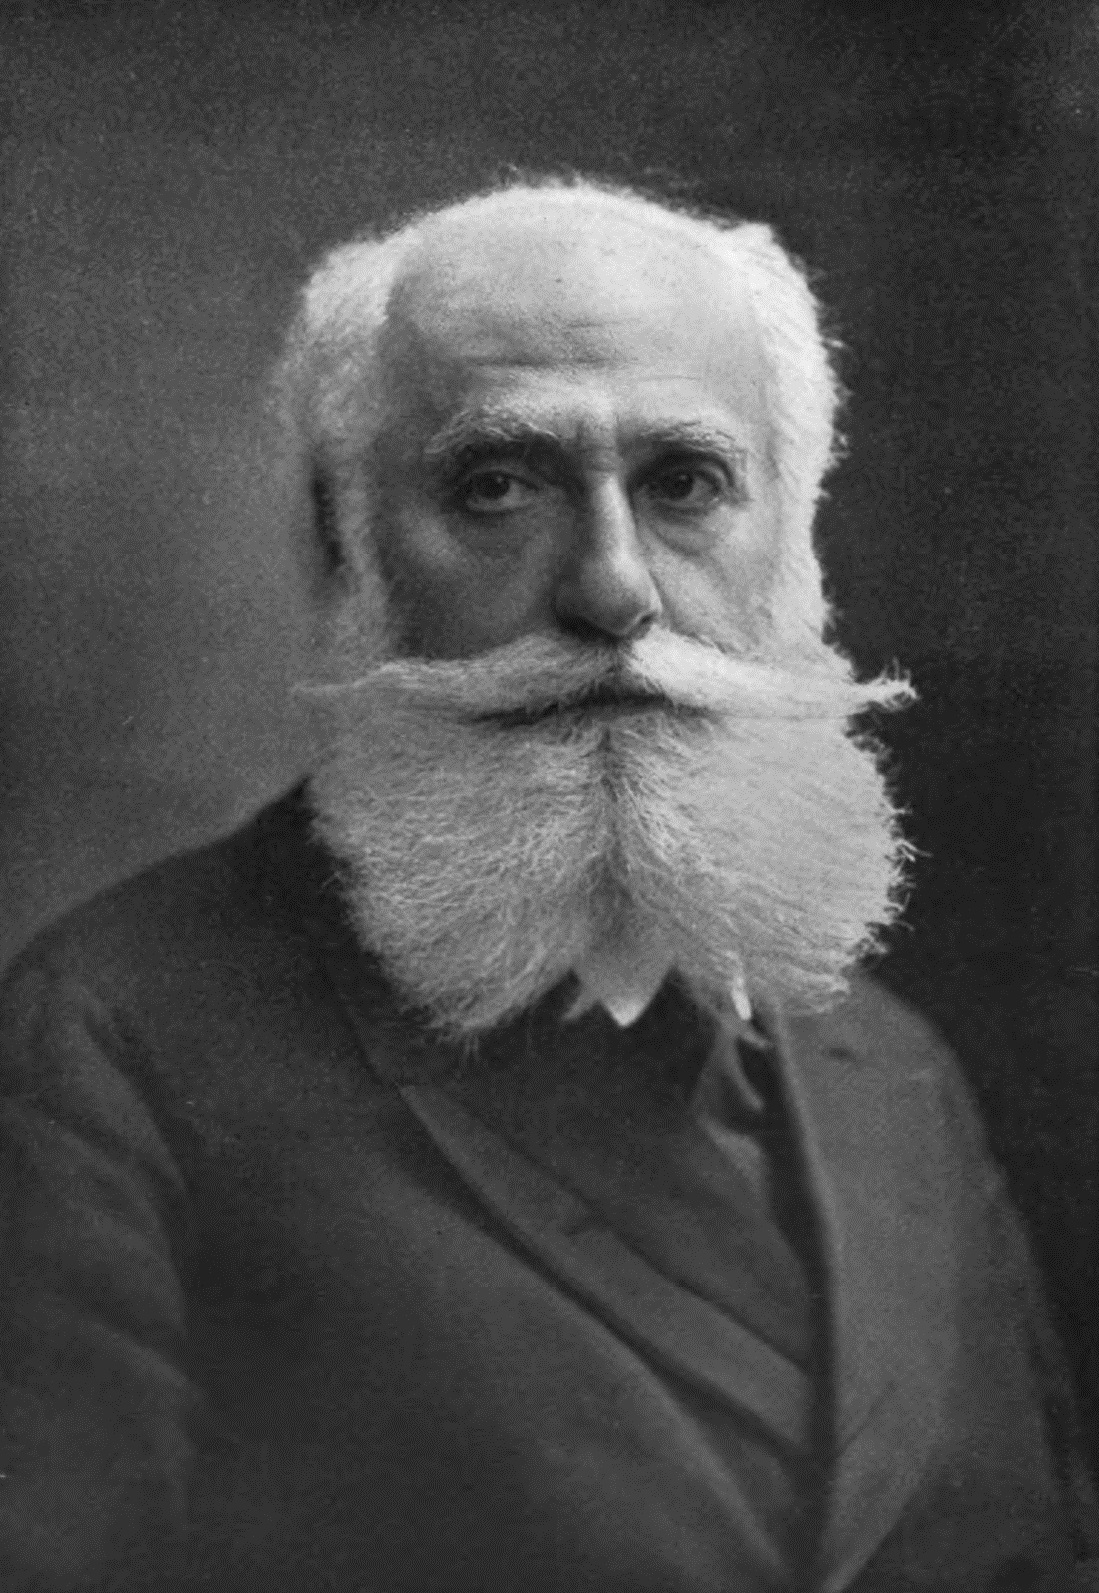 Max Nordau, 1849-1923